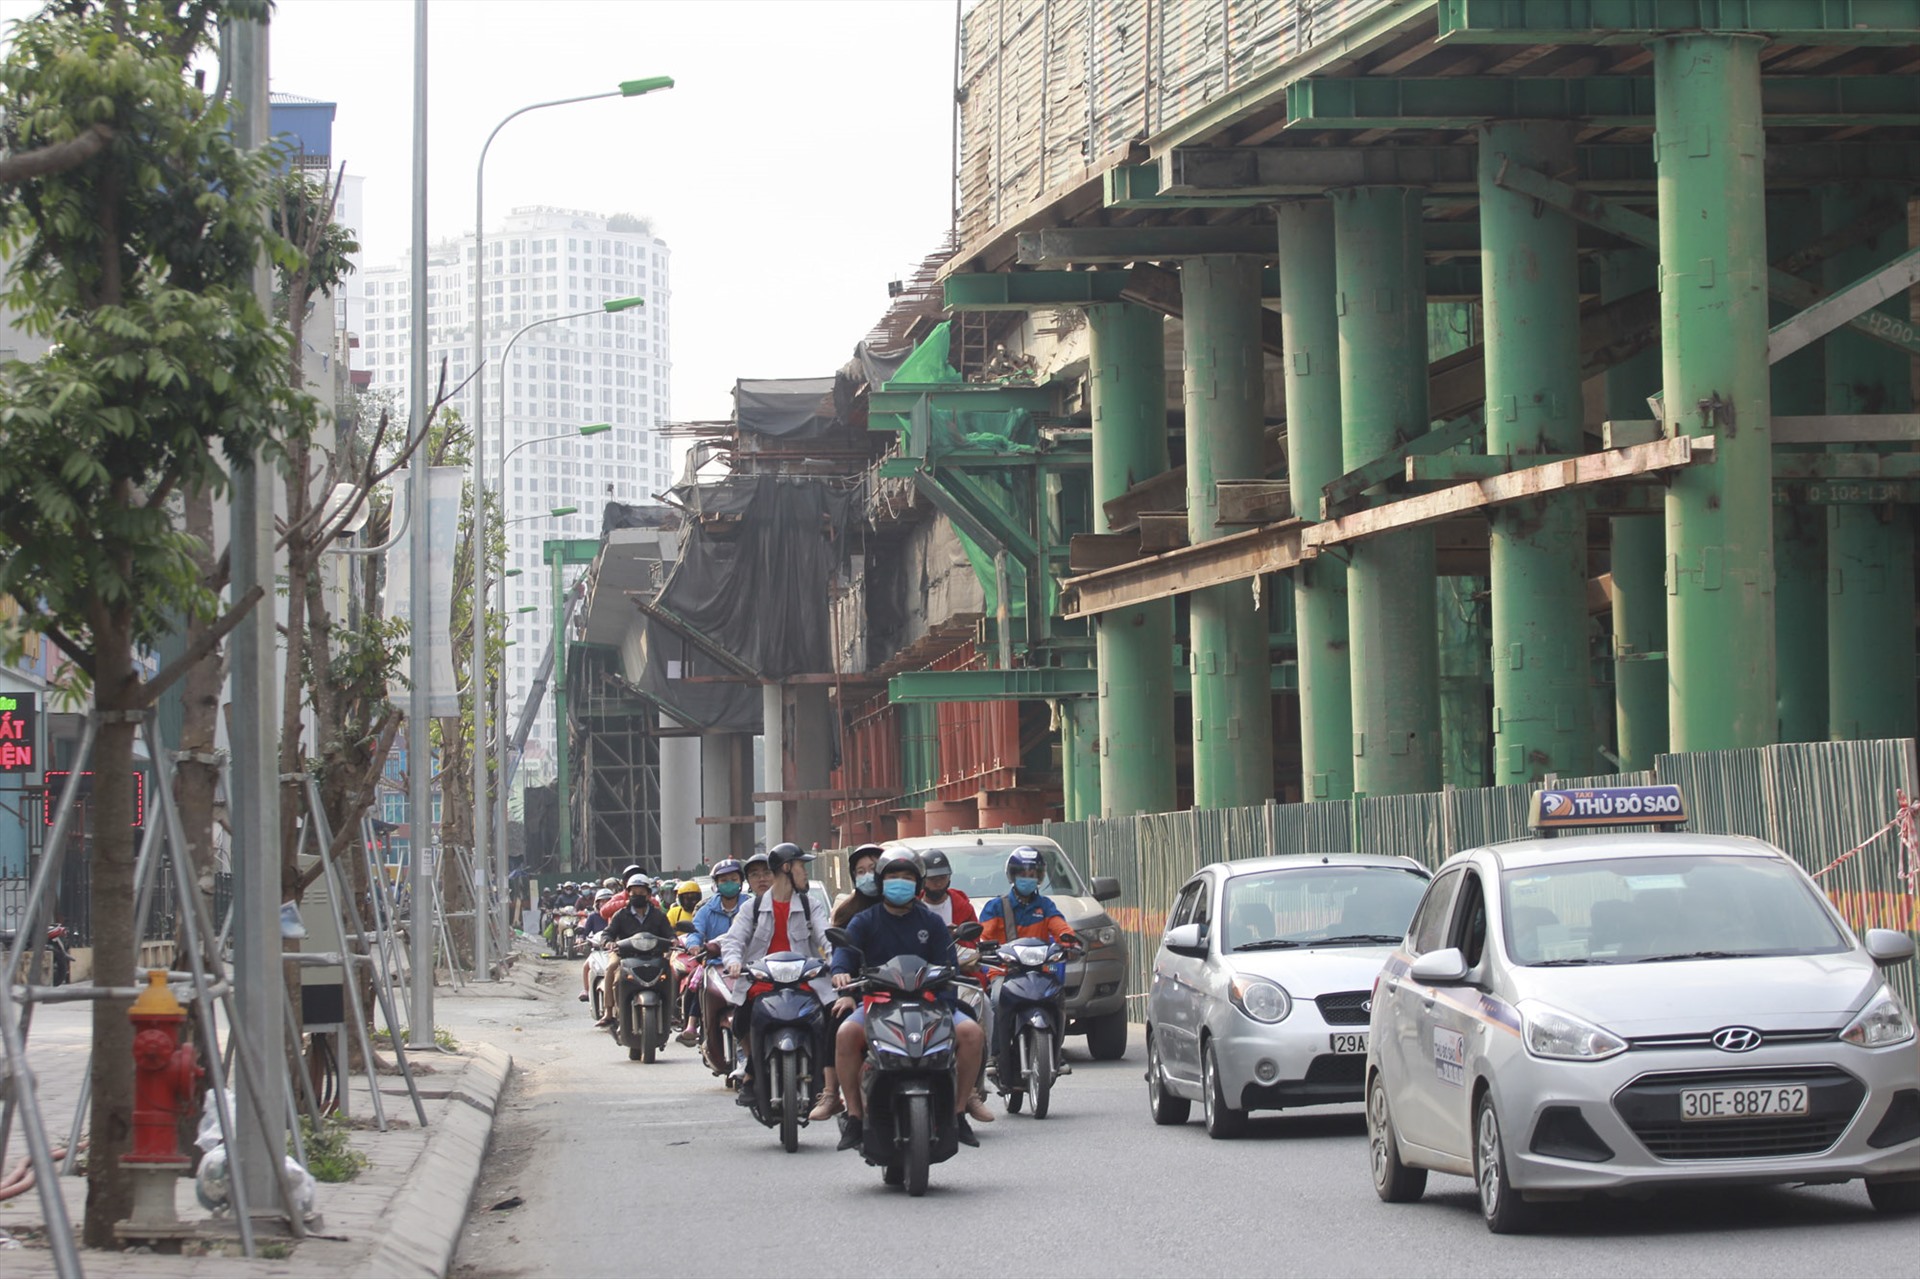 Cho đến ngày 23.2, khu vực đường Trường Chinh (quận Thanh Xuân – Hà Nội) đã gần hoàn thiện.